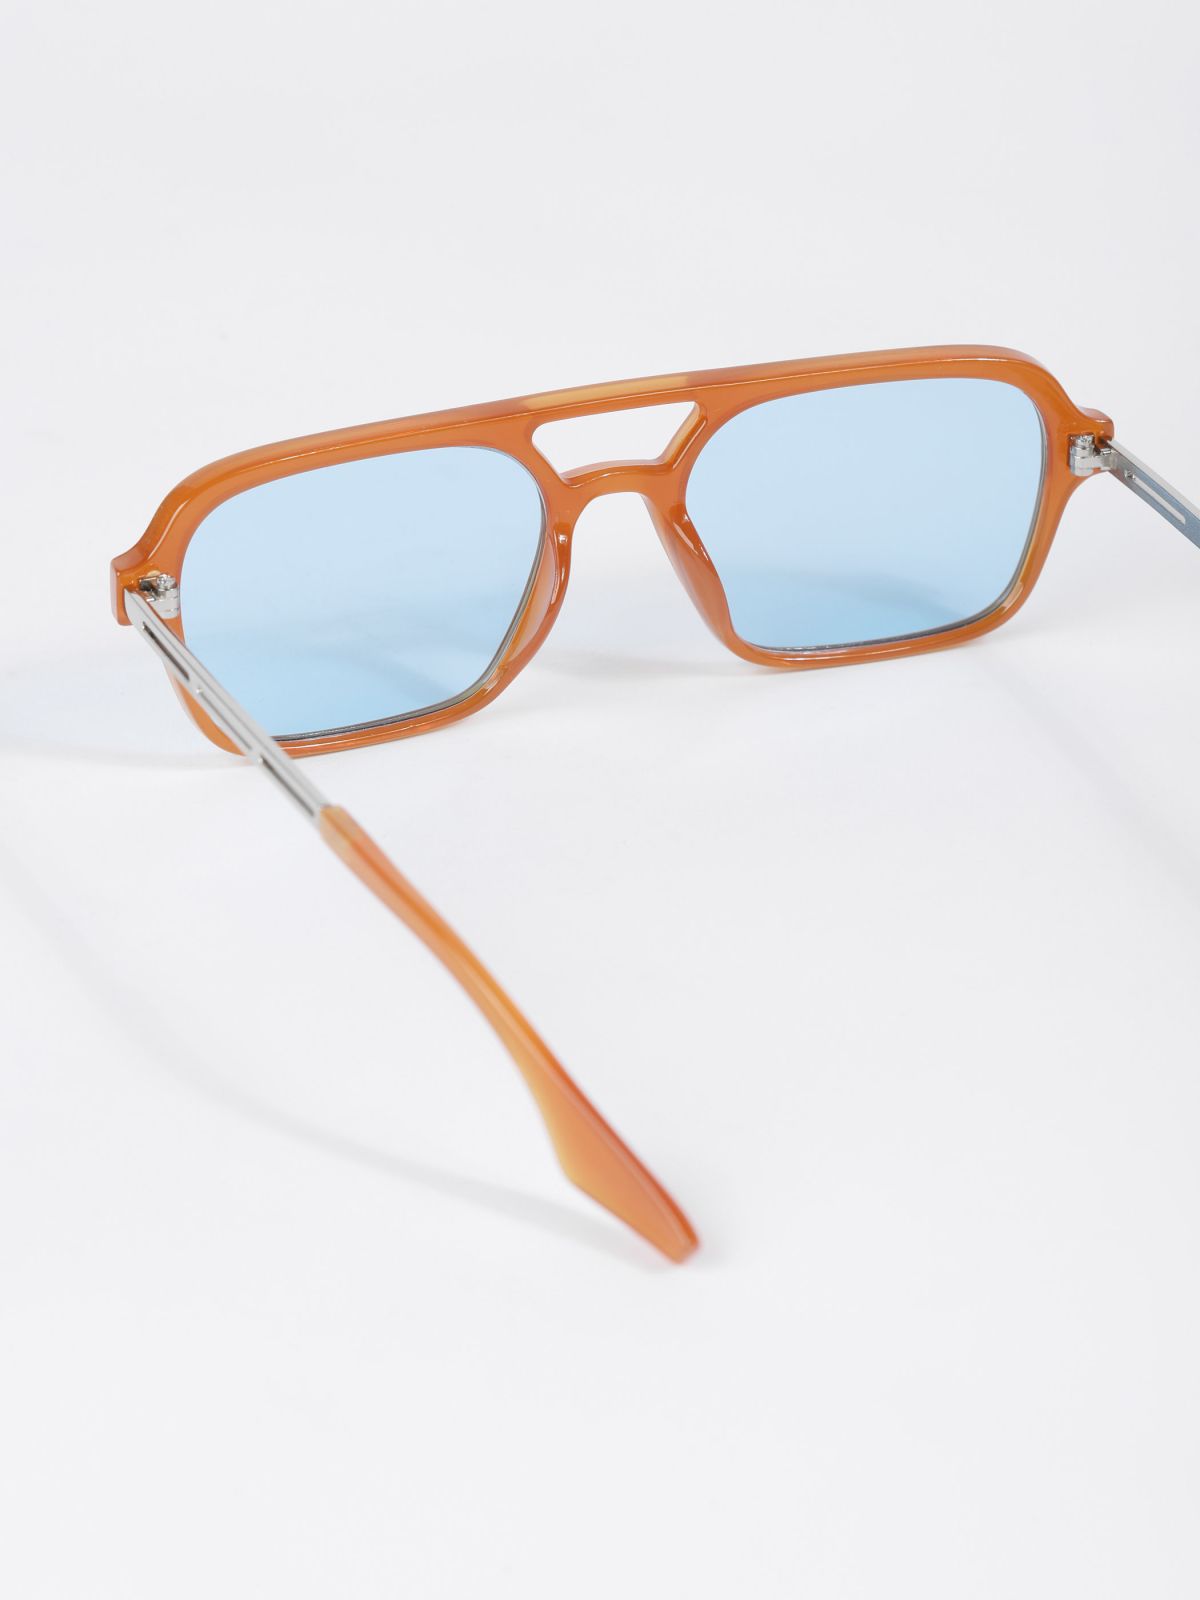  משקפי שמש מלבניים אסימטרים / TX Eyewear Collection של TERMINAL X